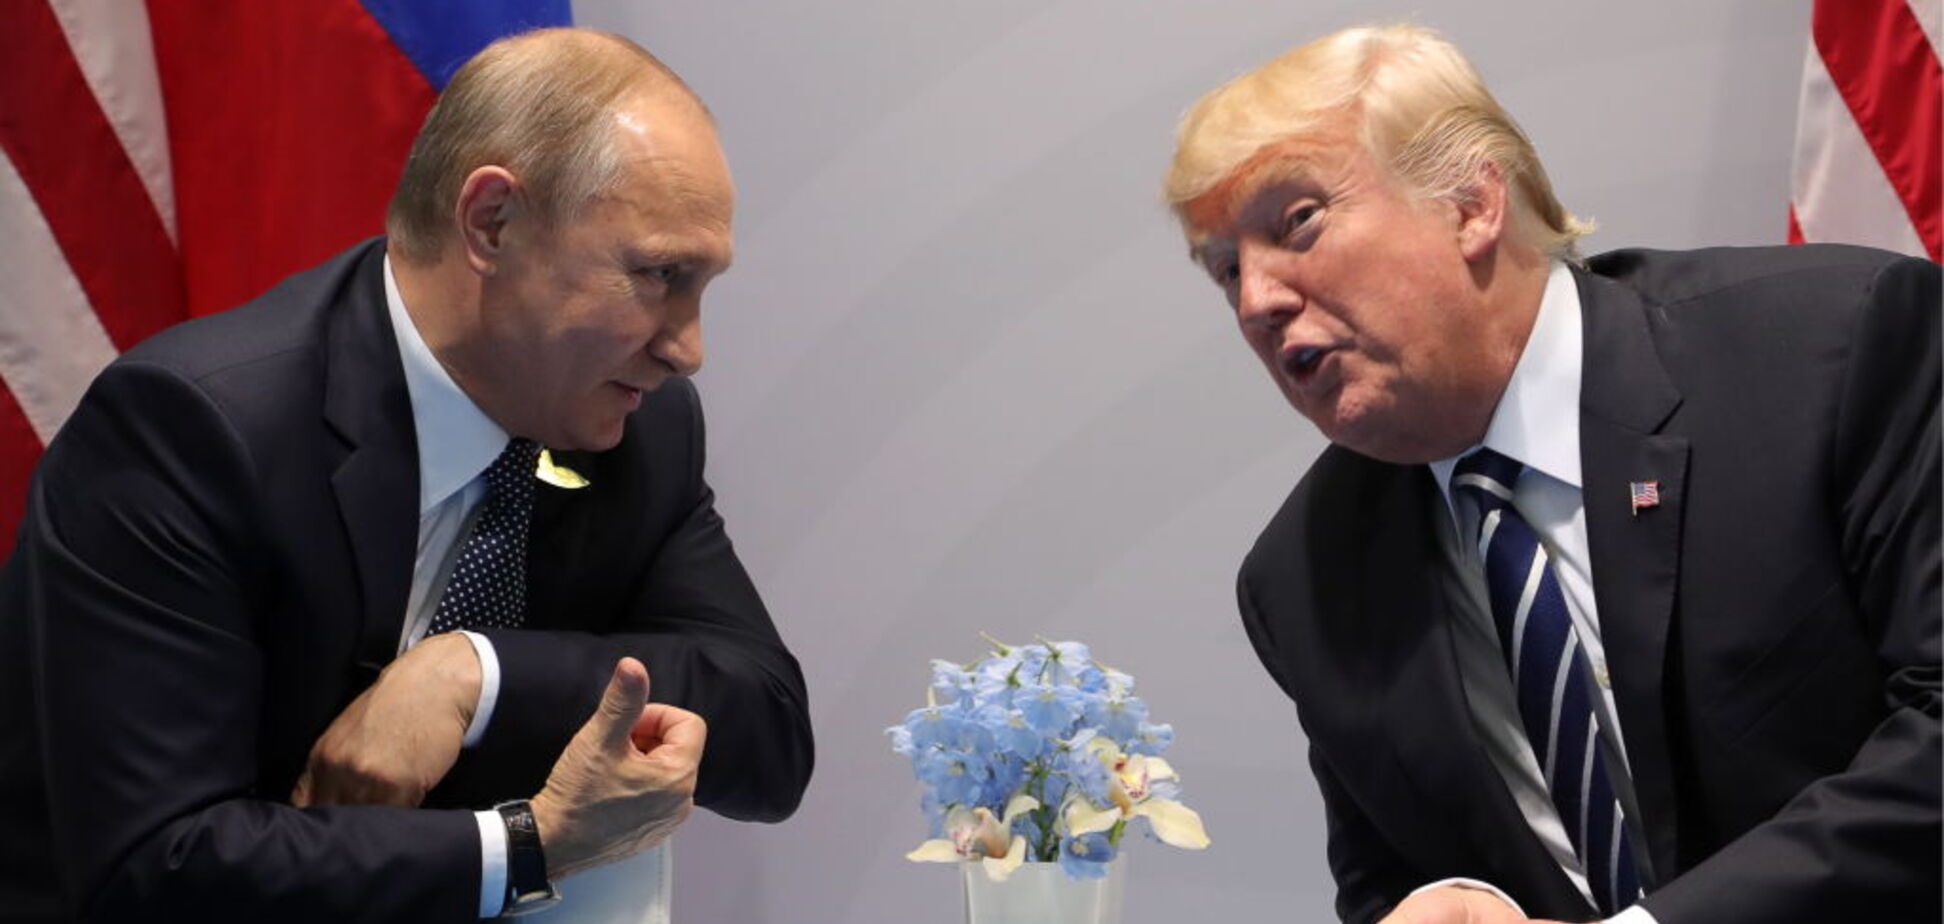 Трамп не будет встречаться с Путиным на саммите АТЭС - Белый дом